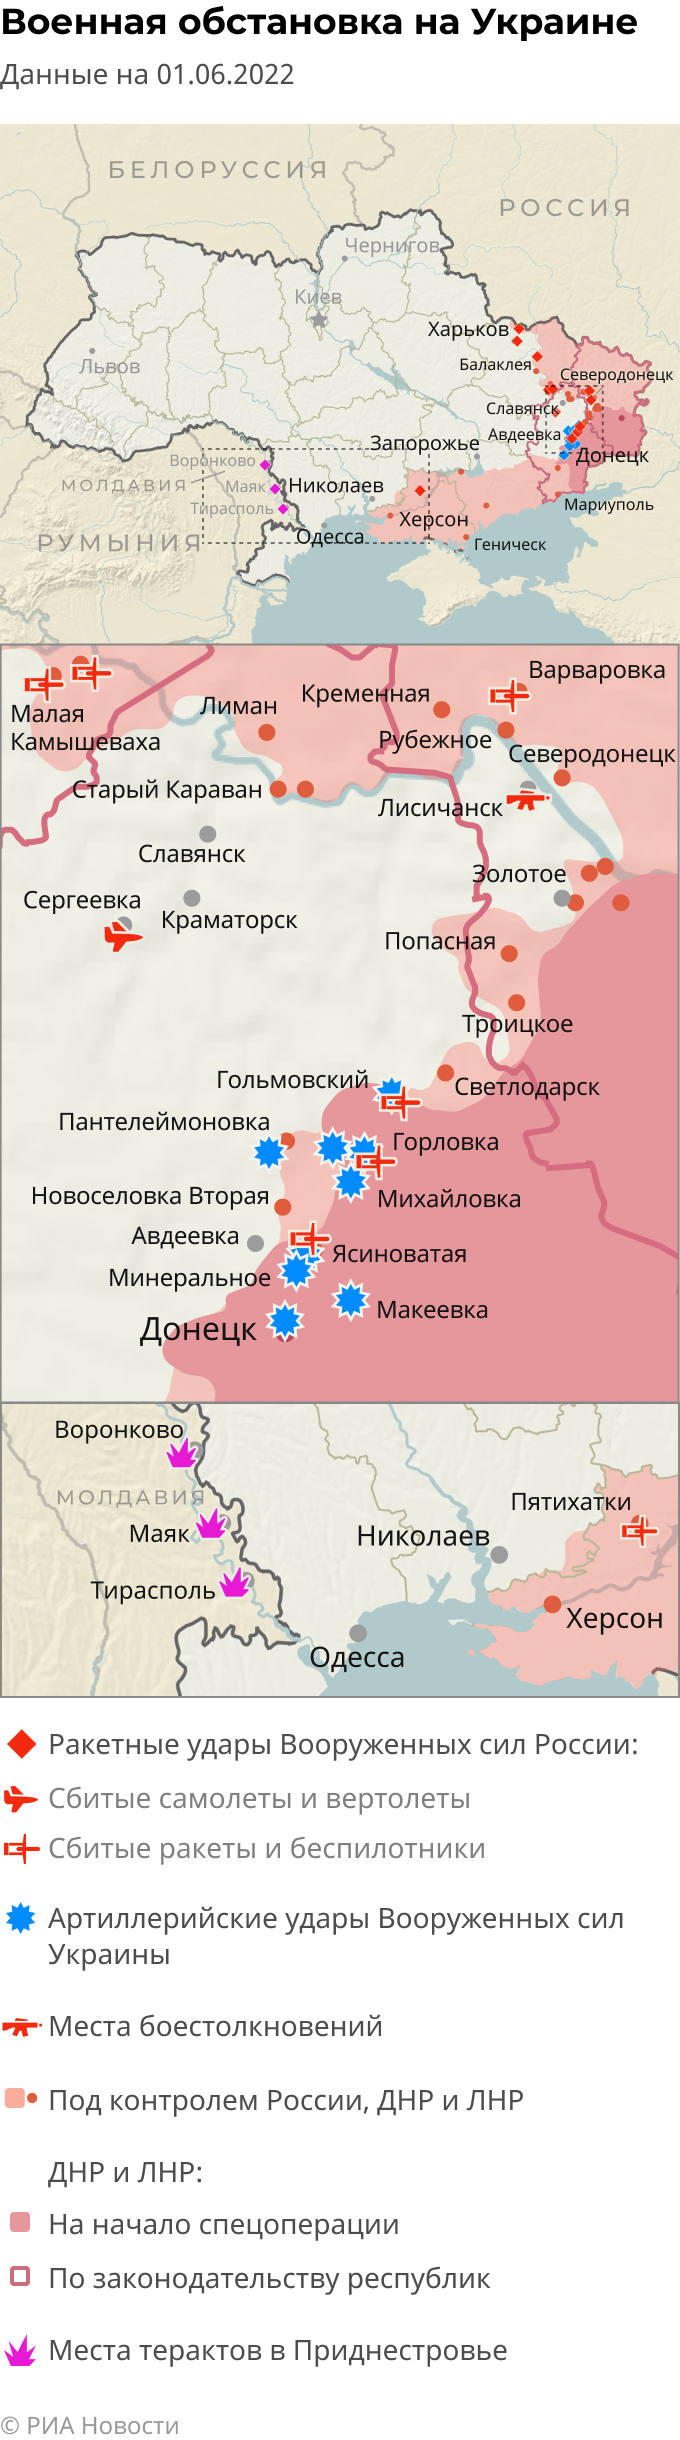 Карта спецоперации на украине 2022 сегодня